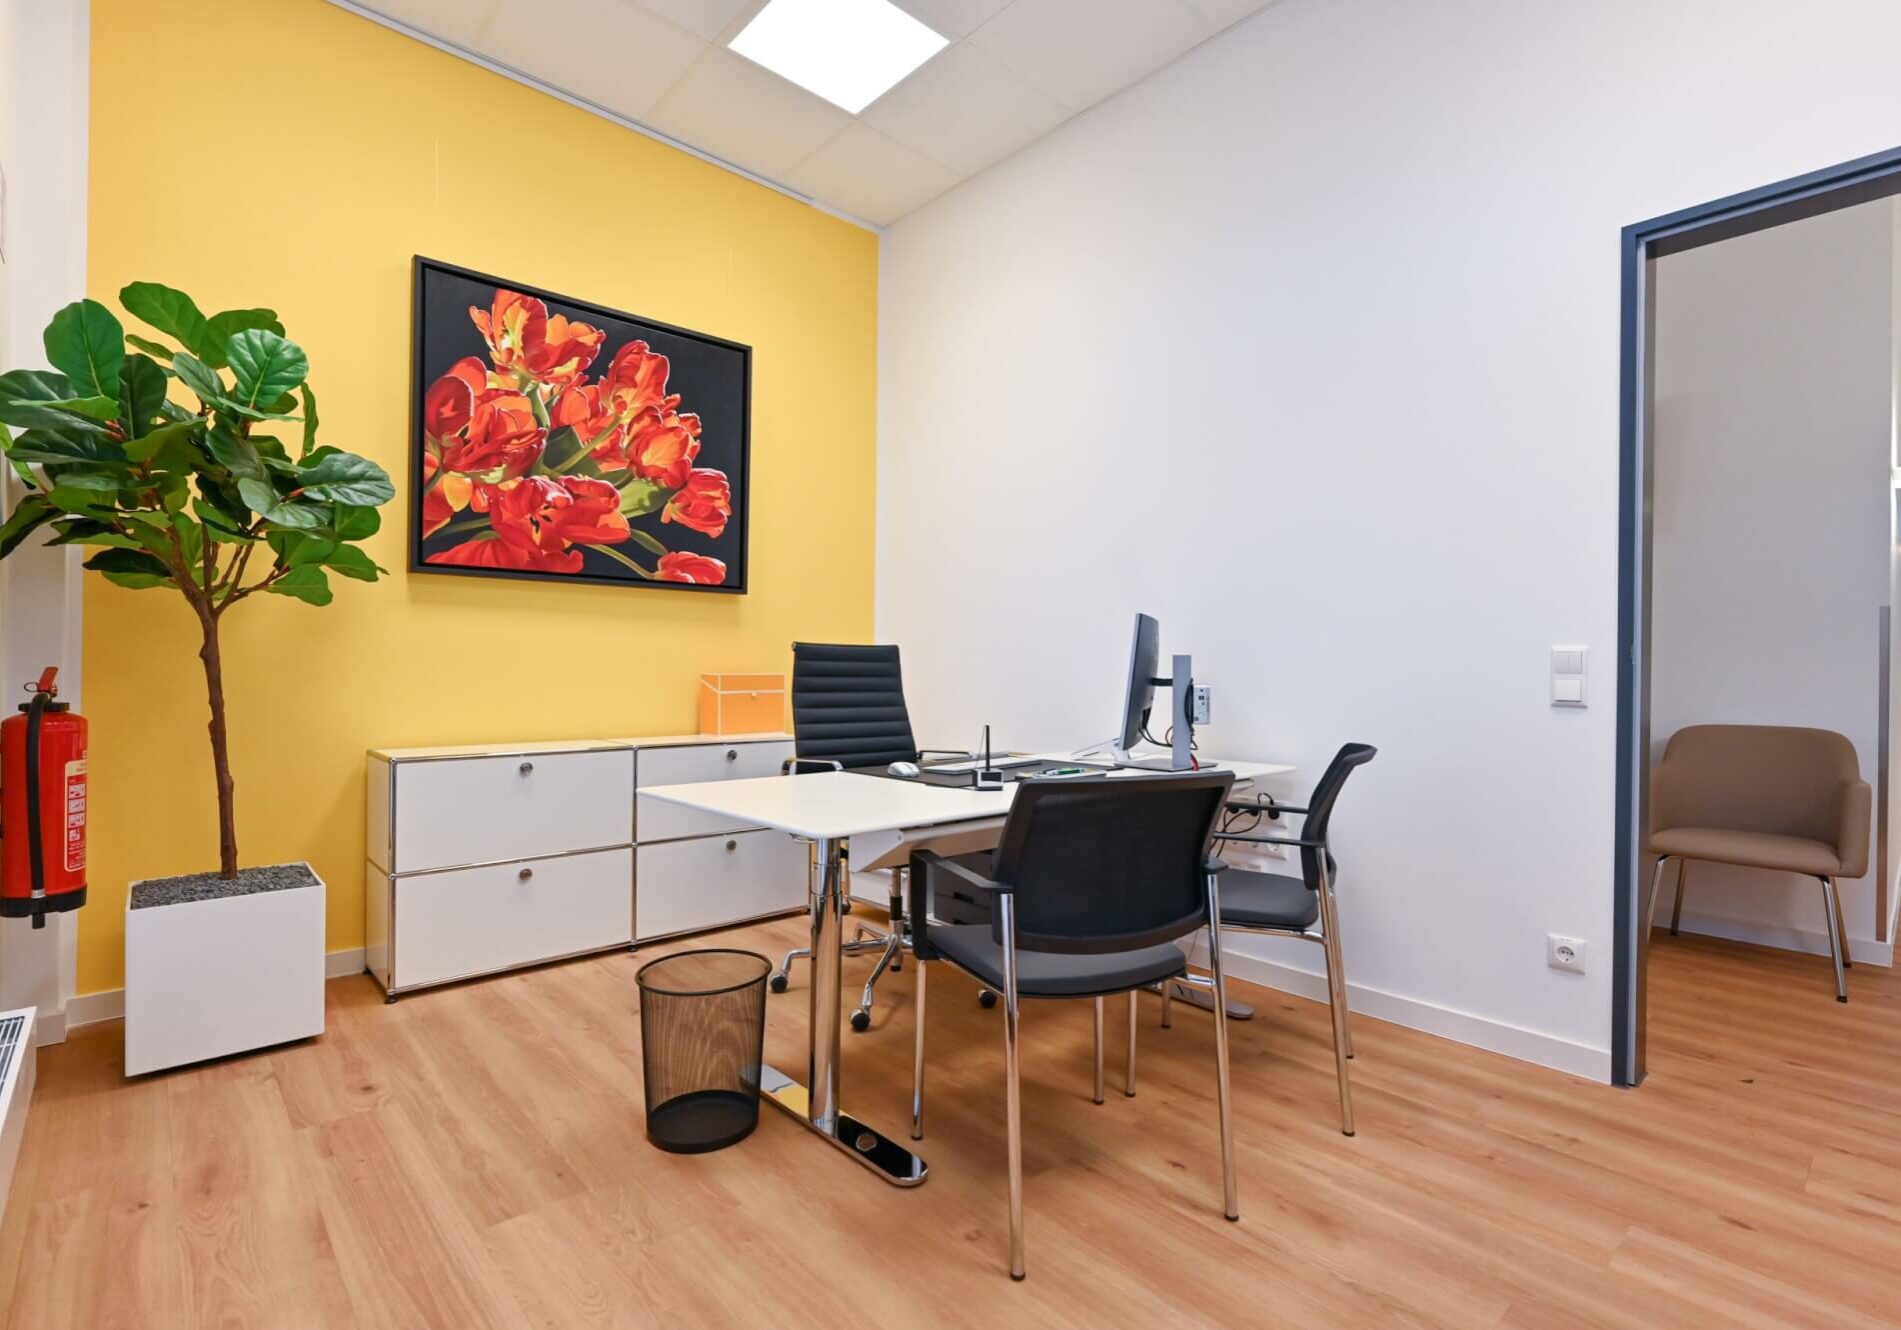 Sprechzimmer mit gelber Wand, darauf ein großes Blumenbild, weißer Schreibtisch mit Computer, schwarzen Stühlen, großer Zimmerpflanze und einem Feuerlöscher.